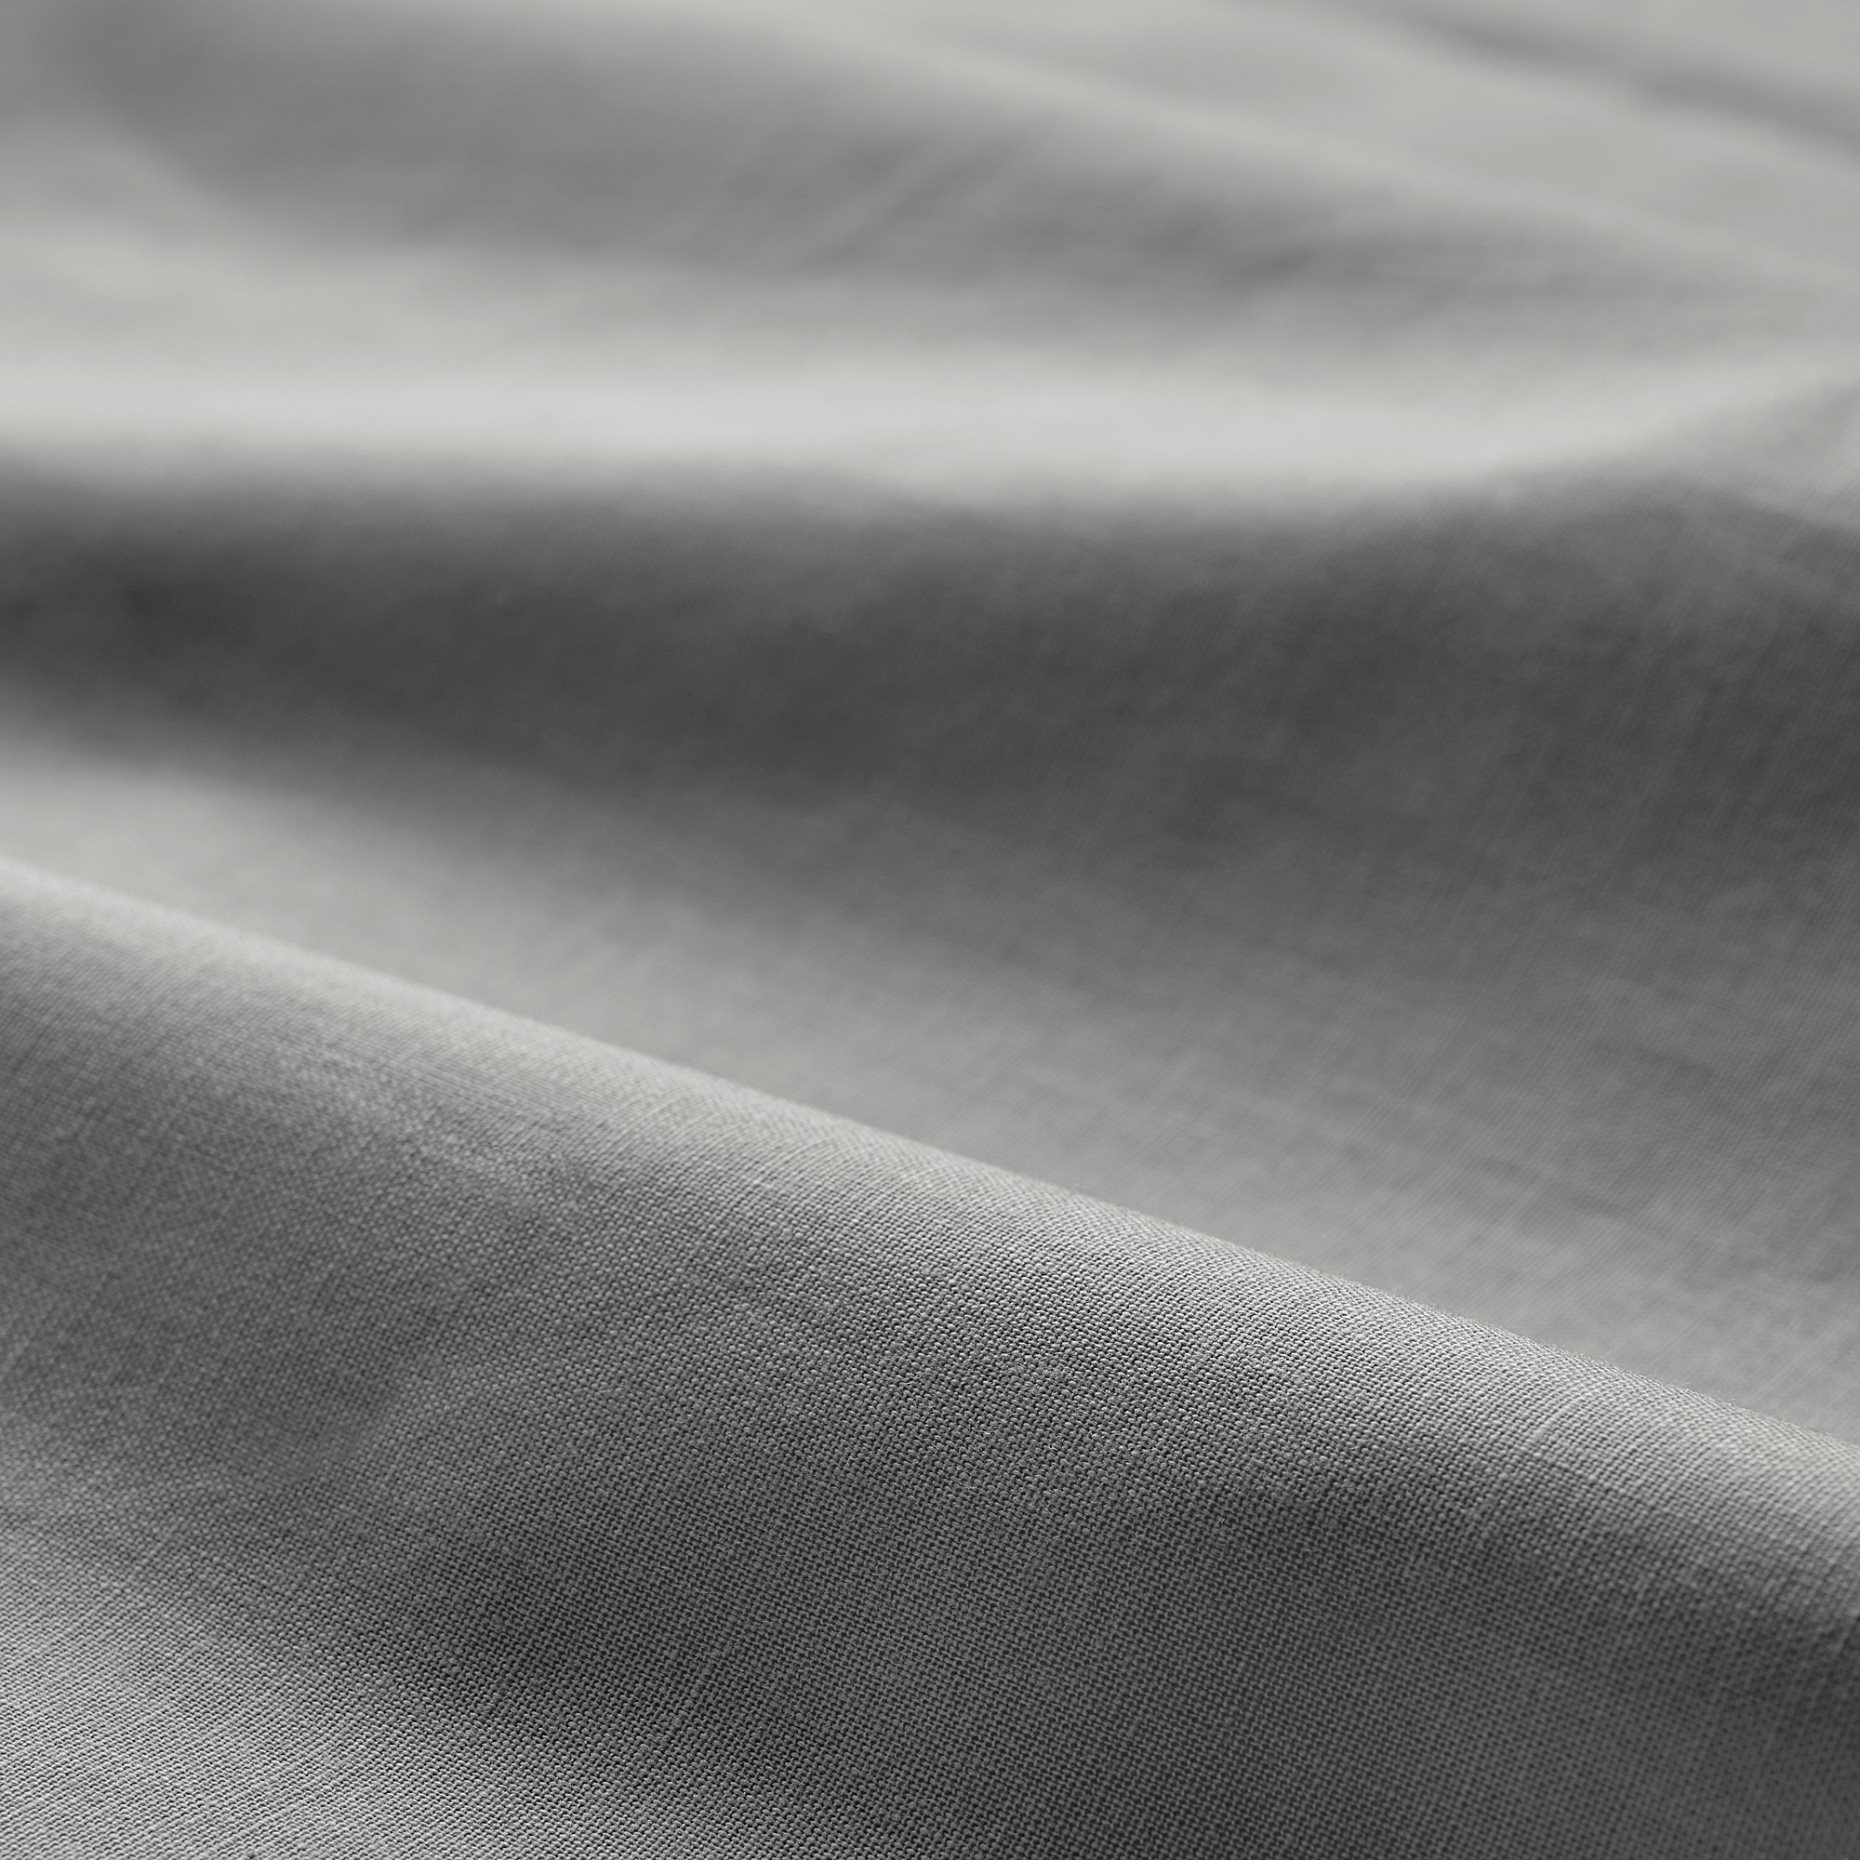 DVALA, pillowcase 50x60 cm, 2 pack, 904.824.76